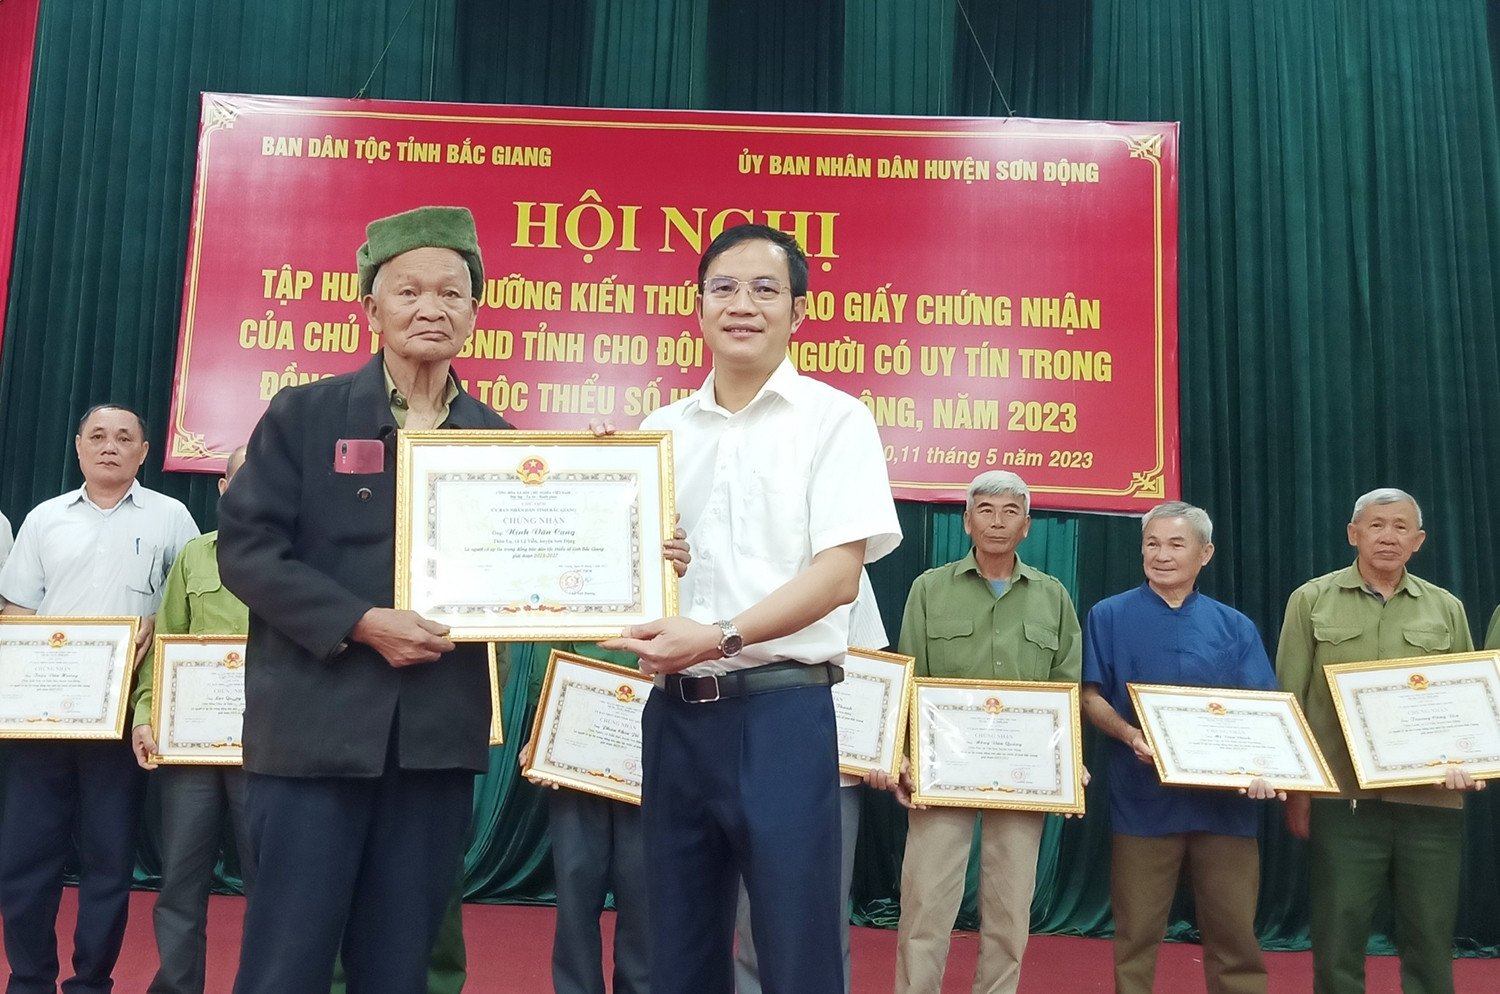 Phó Chủ tịch Thường trực UBND huyện Sơn Động Lê Đức Thắng trao Giấy chứng nhận cho người uy tín của huyện.